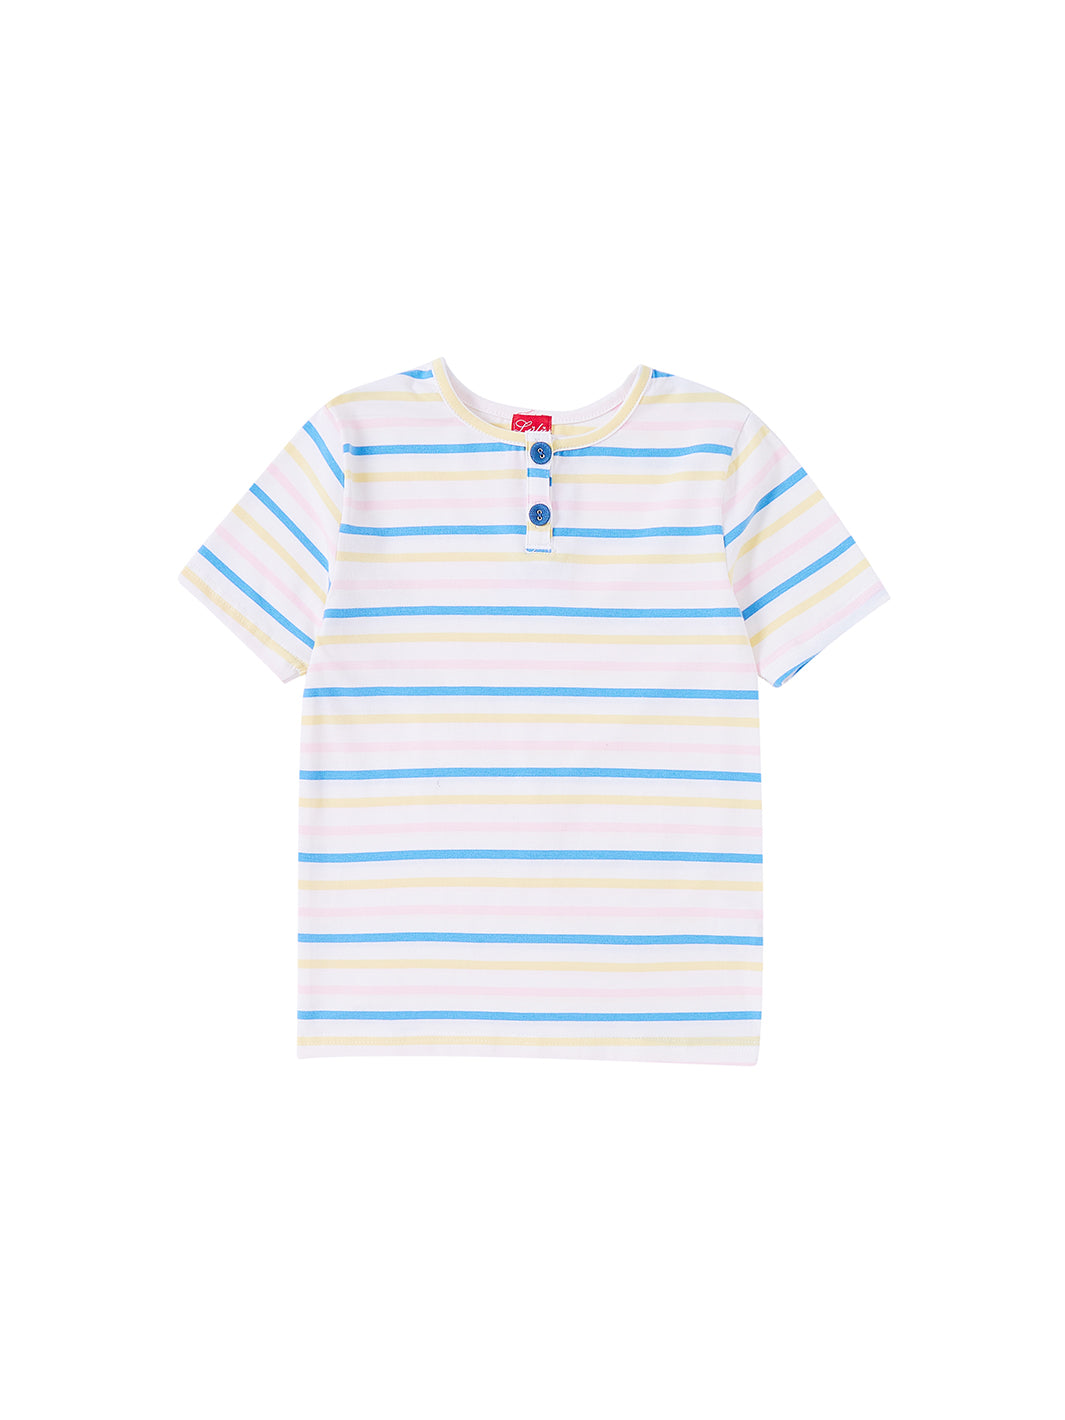 Multi Stripes Short T-shirt